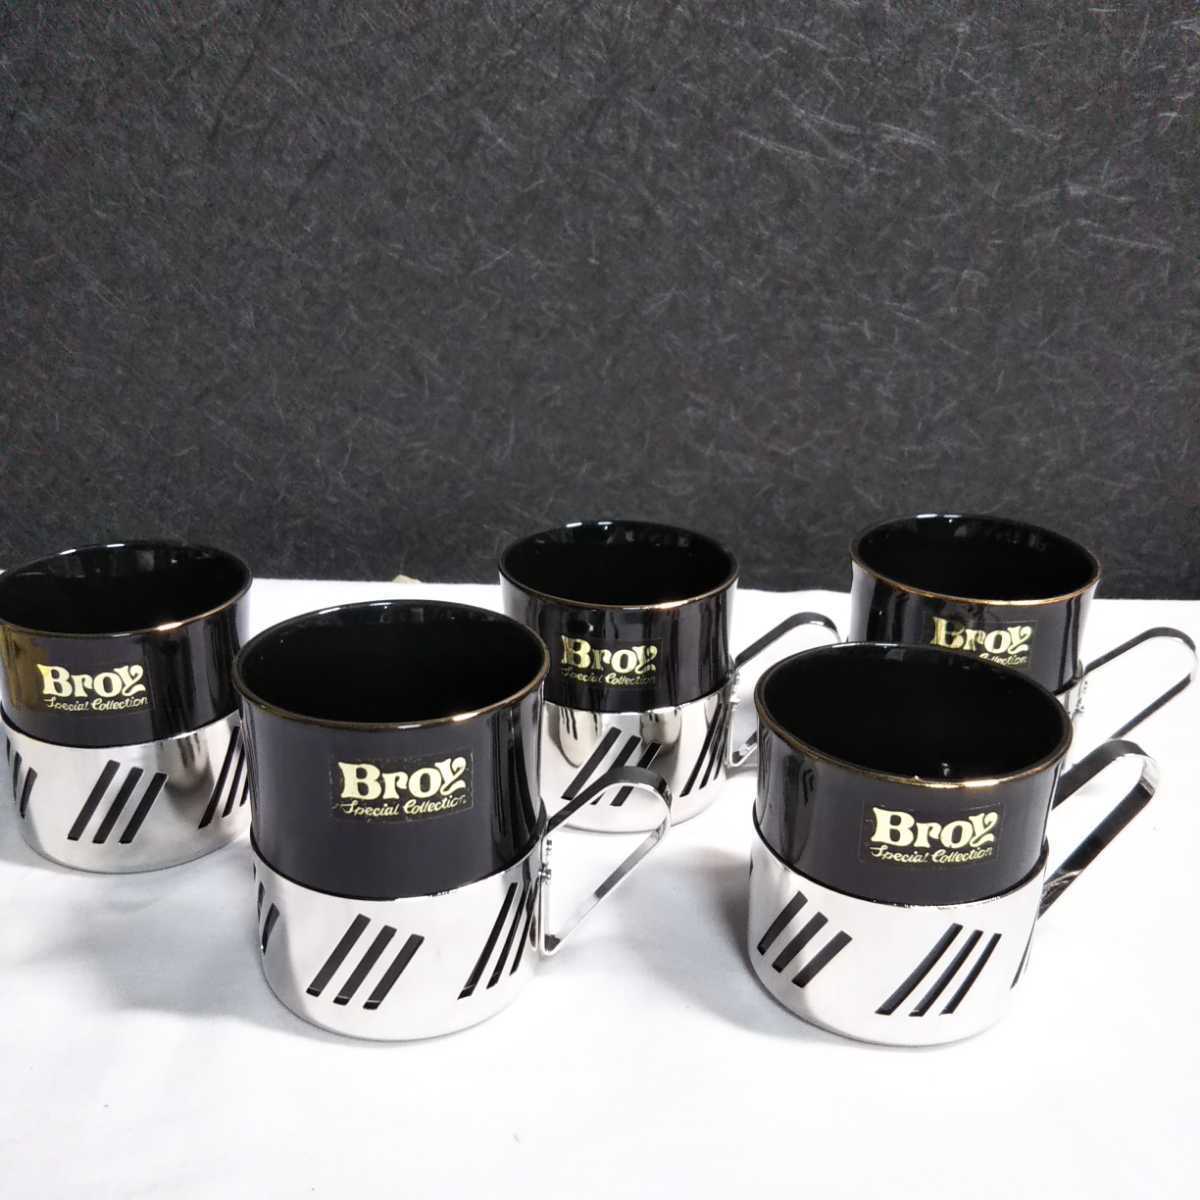 Broy シルバー カラー ティーセット 5客 紙箱付 陶器 茶器 ティーカップ コースター トレー コップ コーヒー _画像1